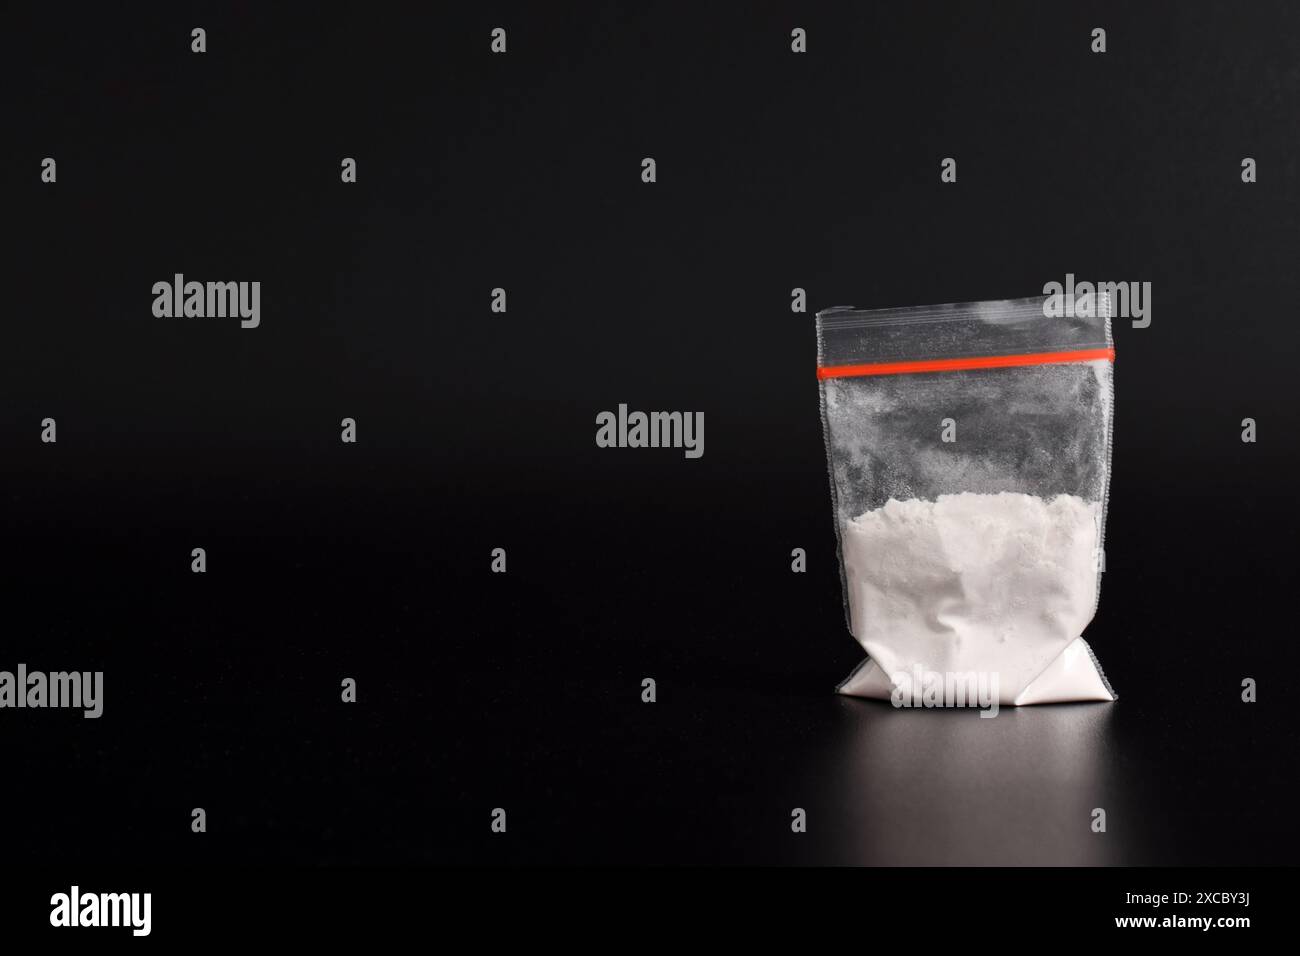 Cocaina in confezione di plastica isolata su sfondo nero. illustrazione di sostanze stupefacenti illegali, narcotici Foto Stock